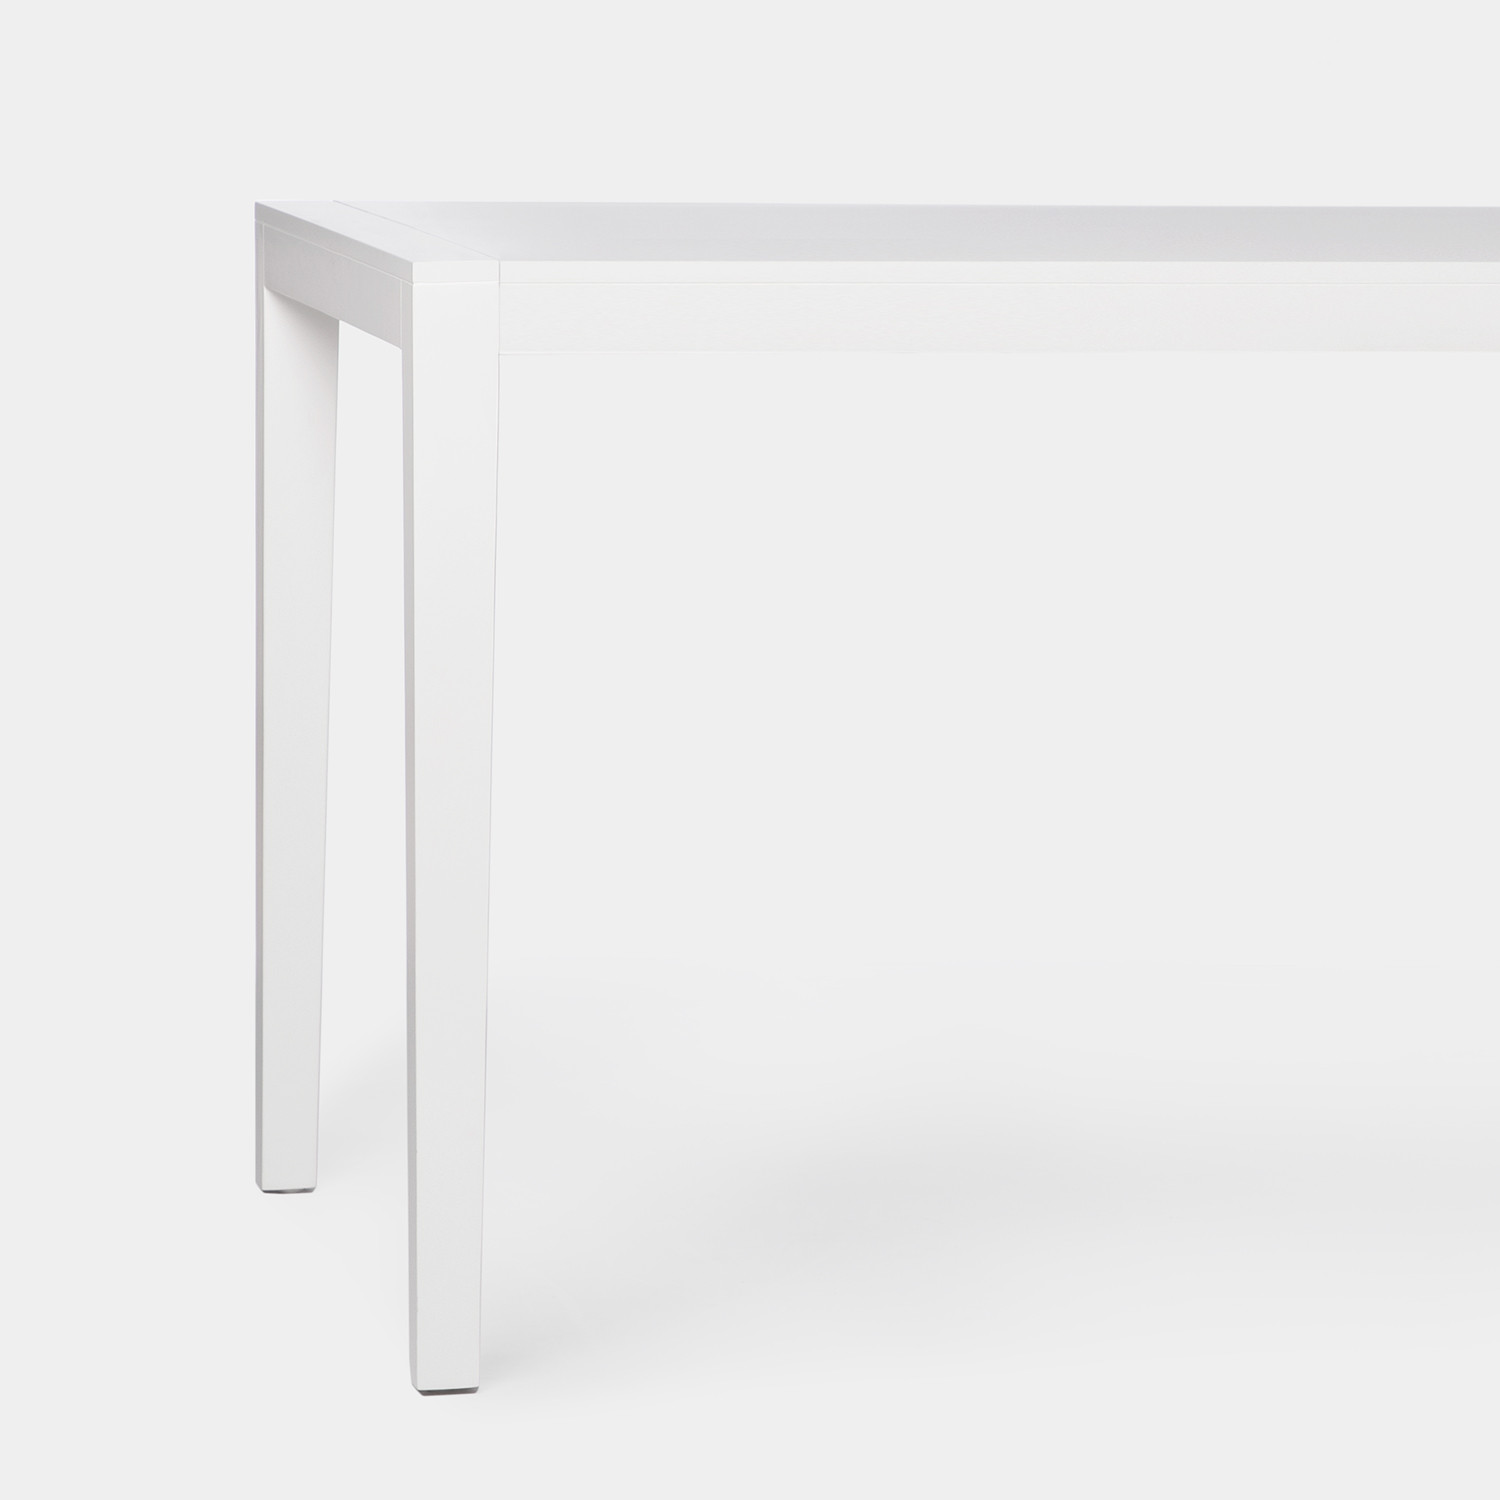 La mesa de comedor rectangular Mara en madera color blanco tiene un diseño sencillo y atemporal idóneo para completar cualquier salón